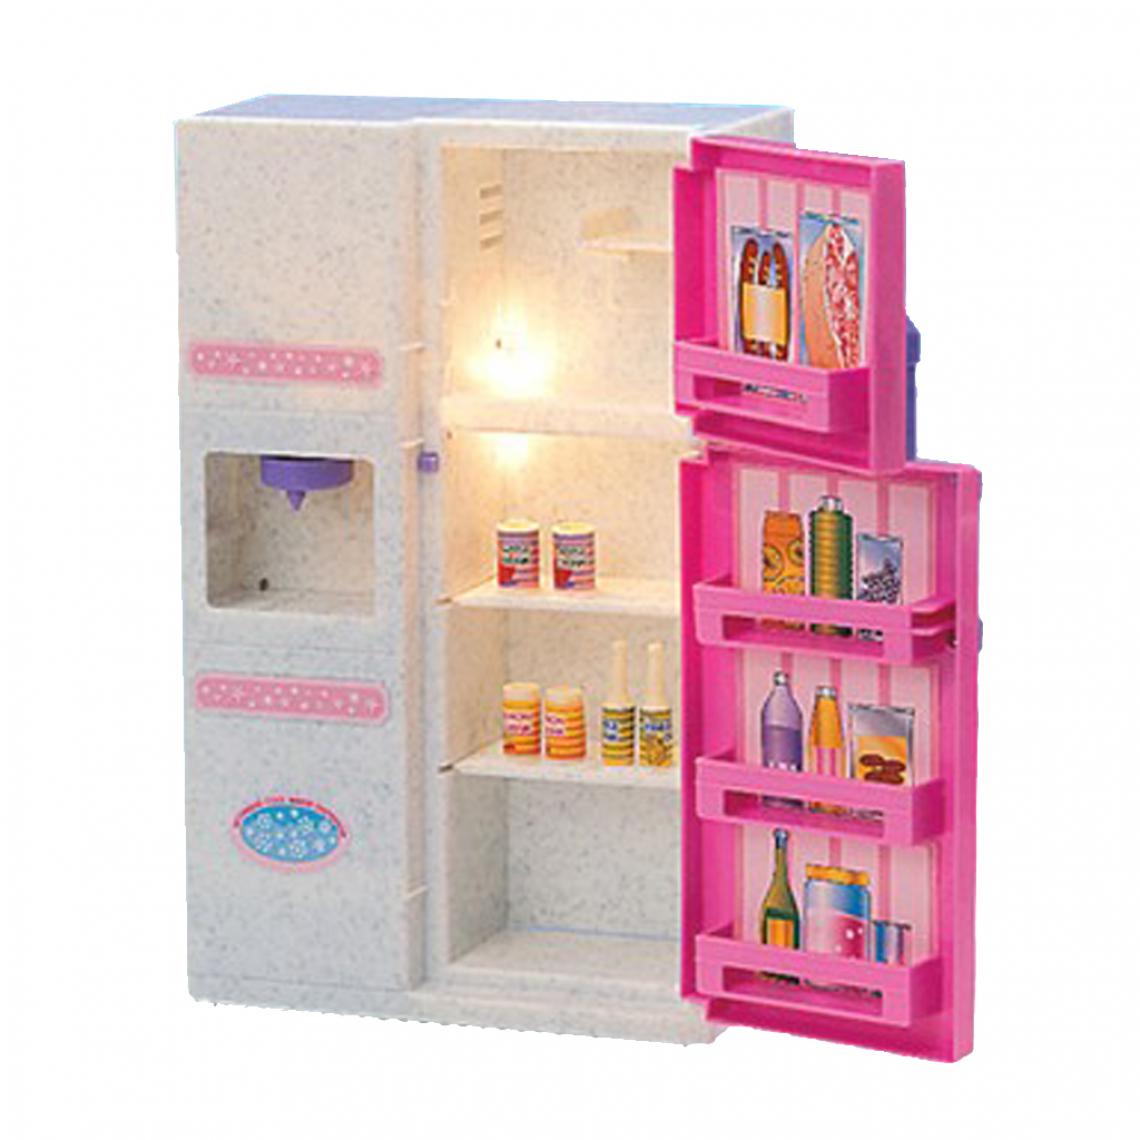 marque generique - réfrigérateur en plastique 1/6 réfrigérateur pour accessoire de maison de poupée miniature - Jouet pour chien